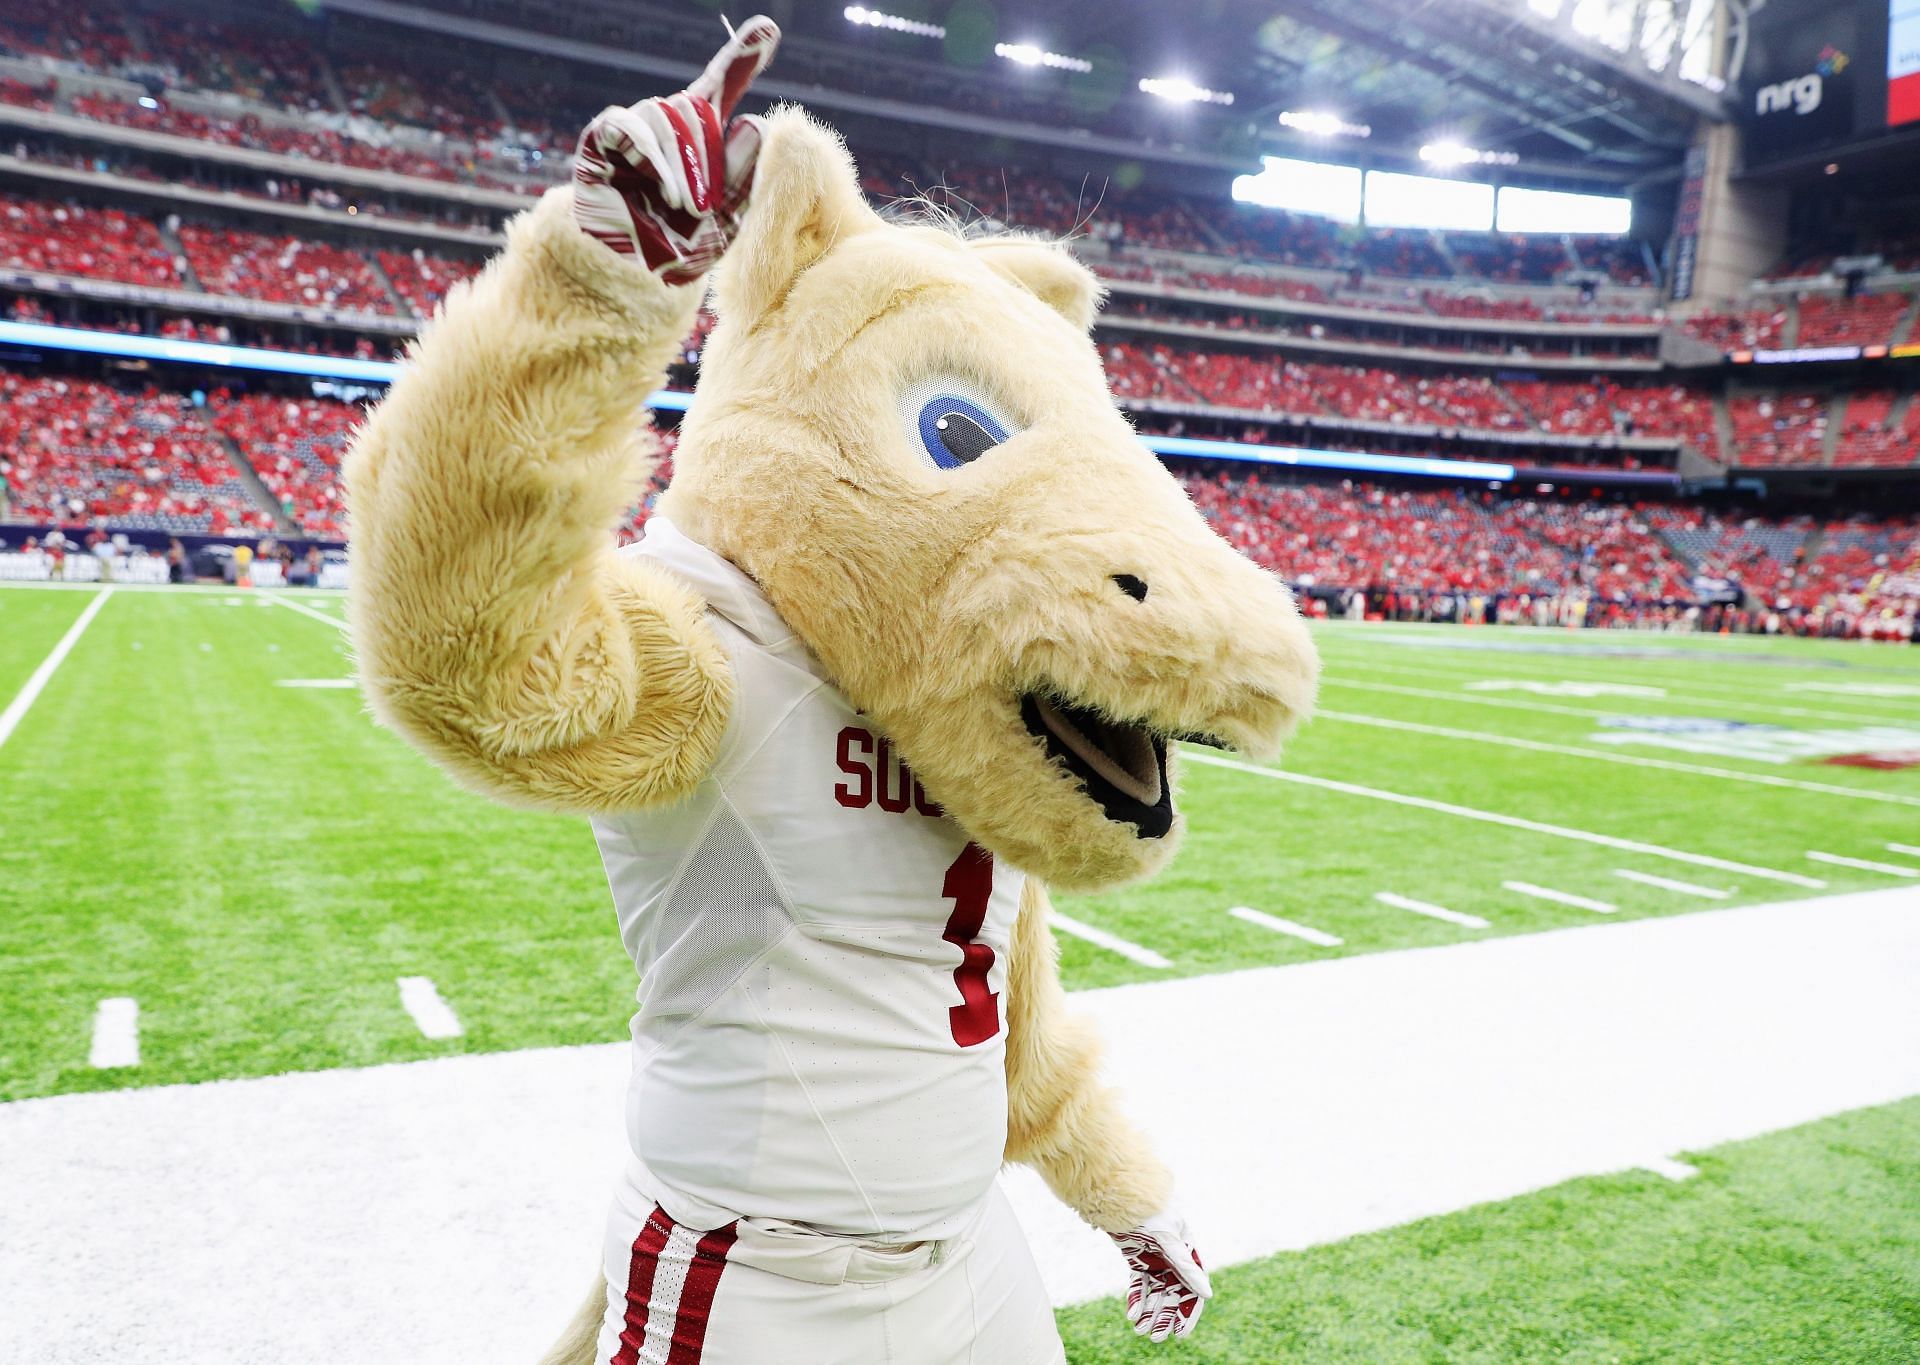 The University of Oklahoma Mascot, The Sooners